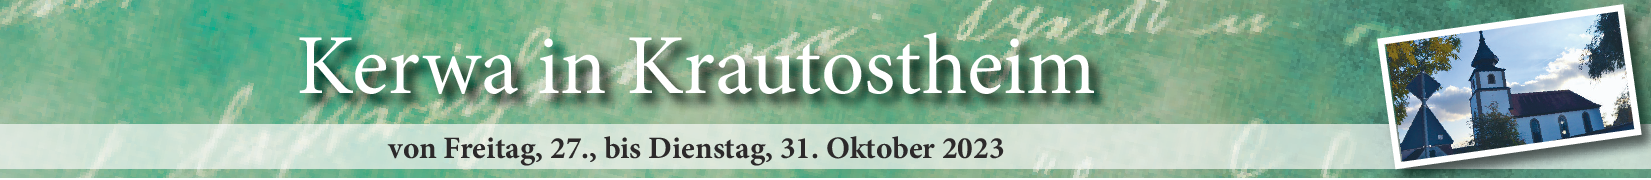 Kerwa in Krautostheim vom 27. bis 31. Oktober: Die vier B's: „Baum, Bier, Braten, Beten“